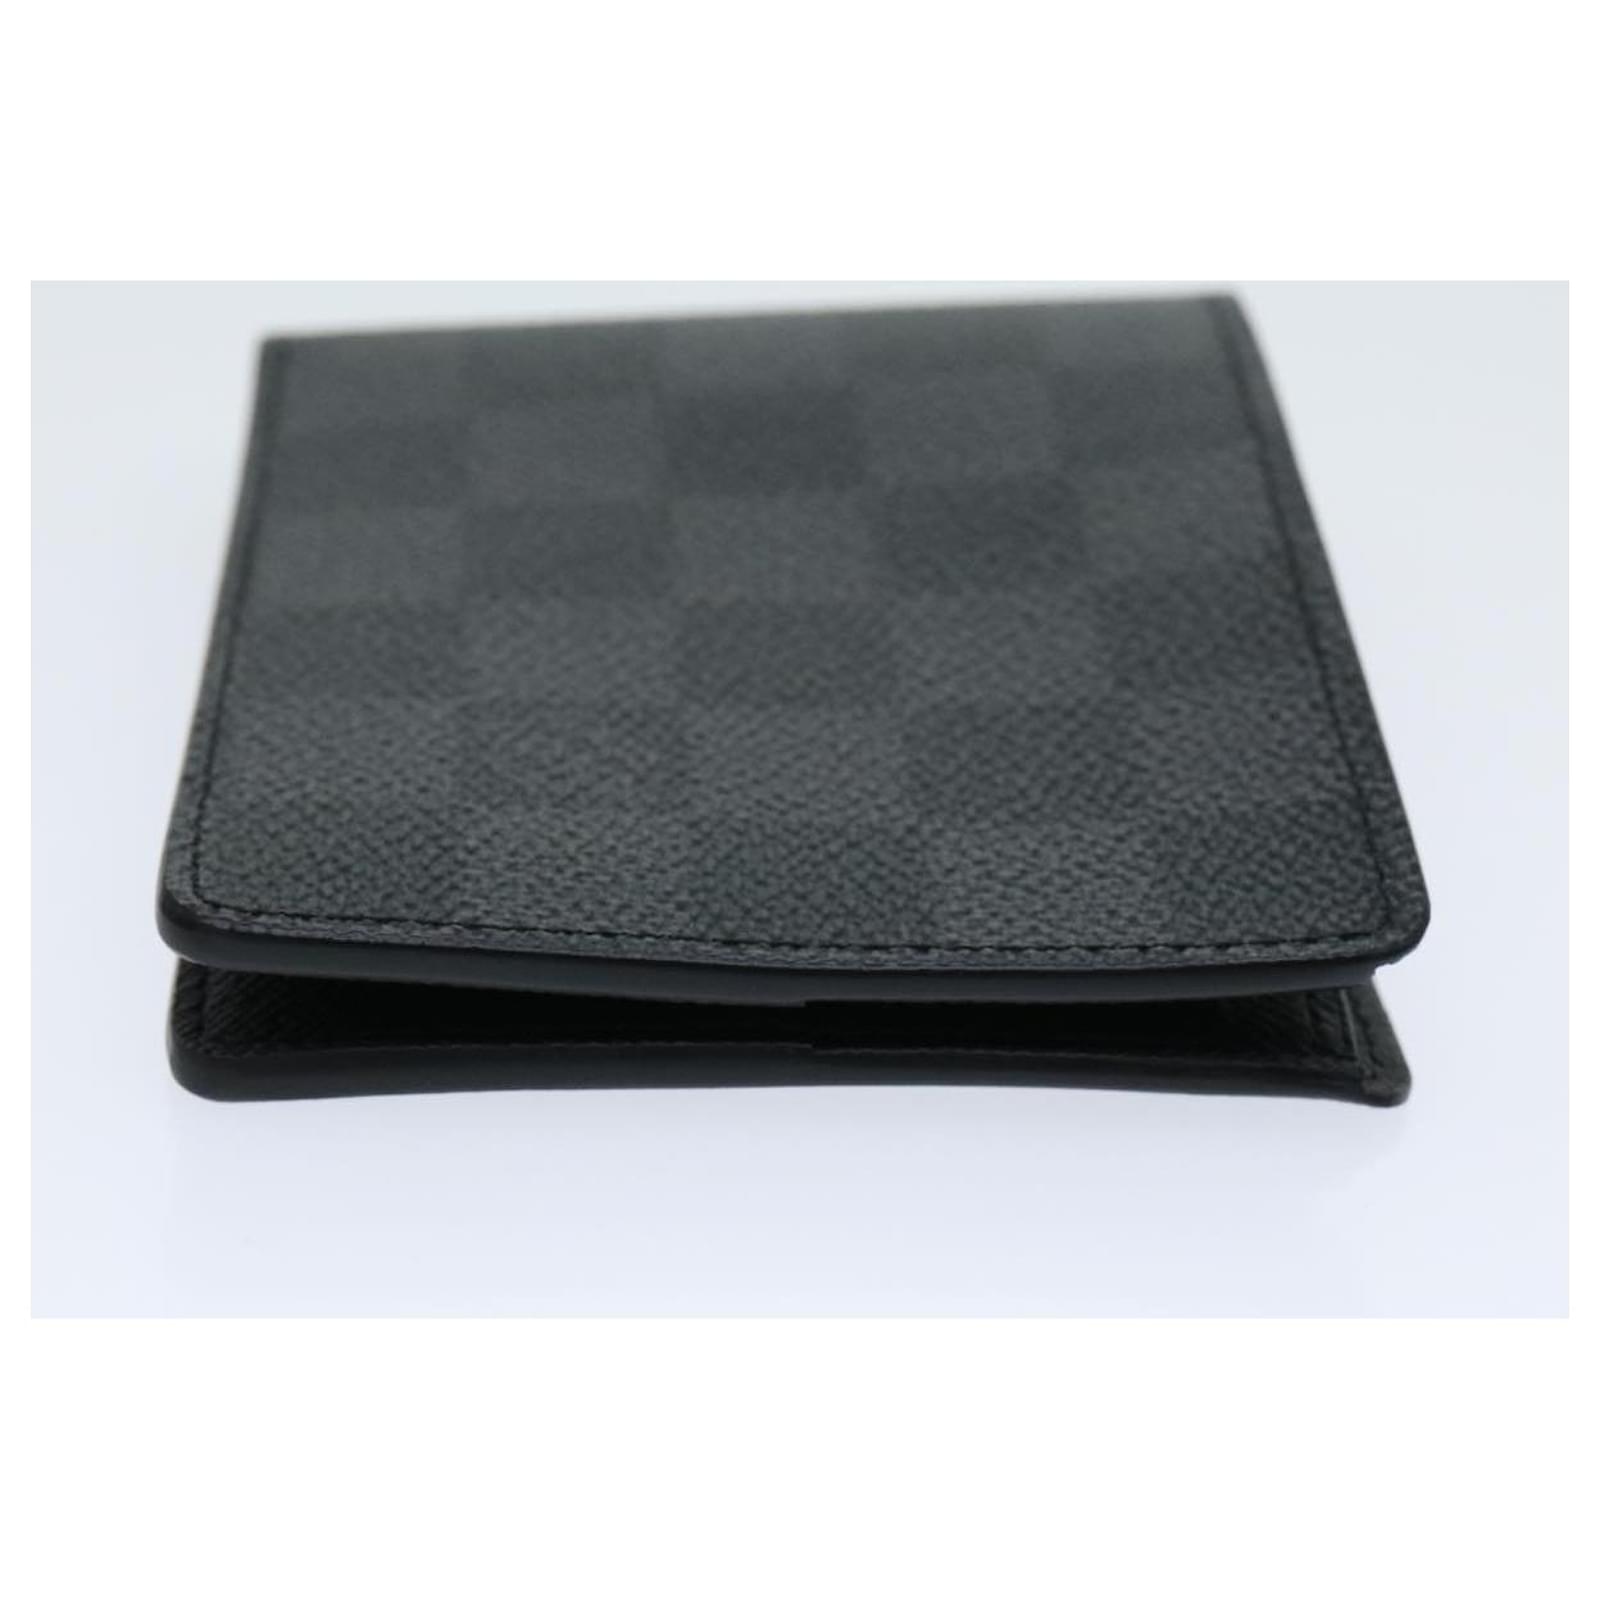 Louis Vuitton SLENDER Slender Wallet (N63261, N63261)